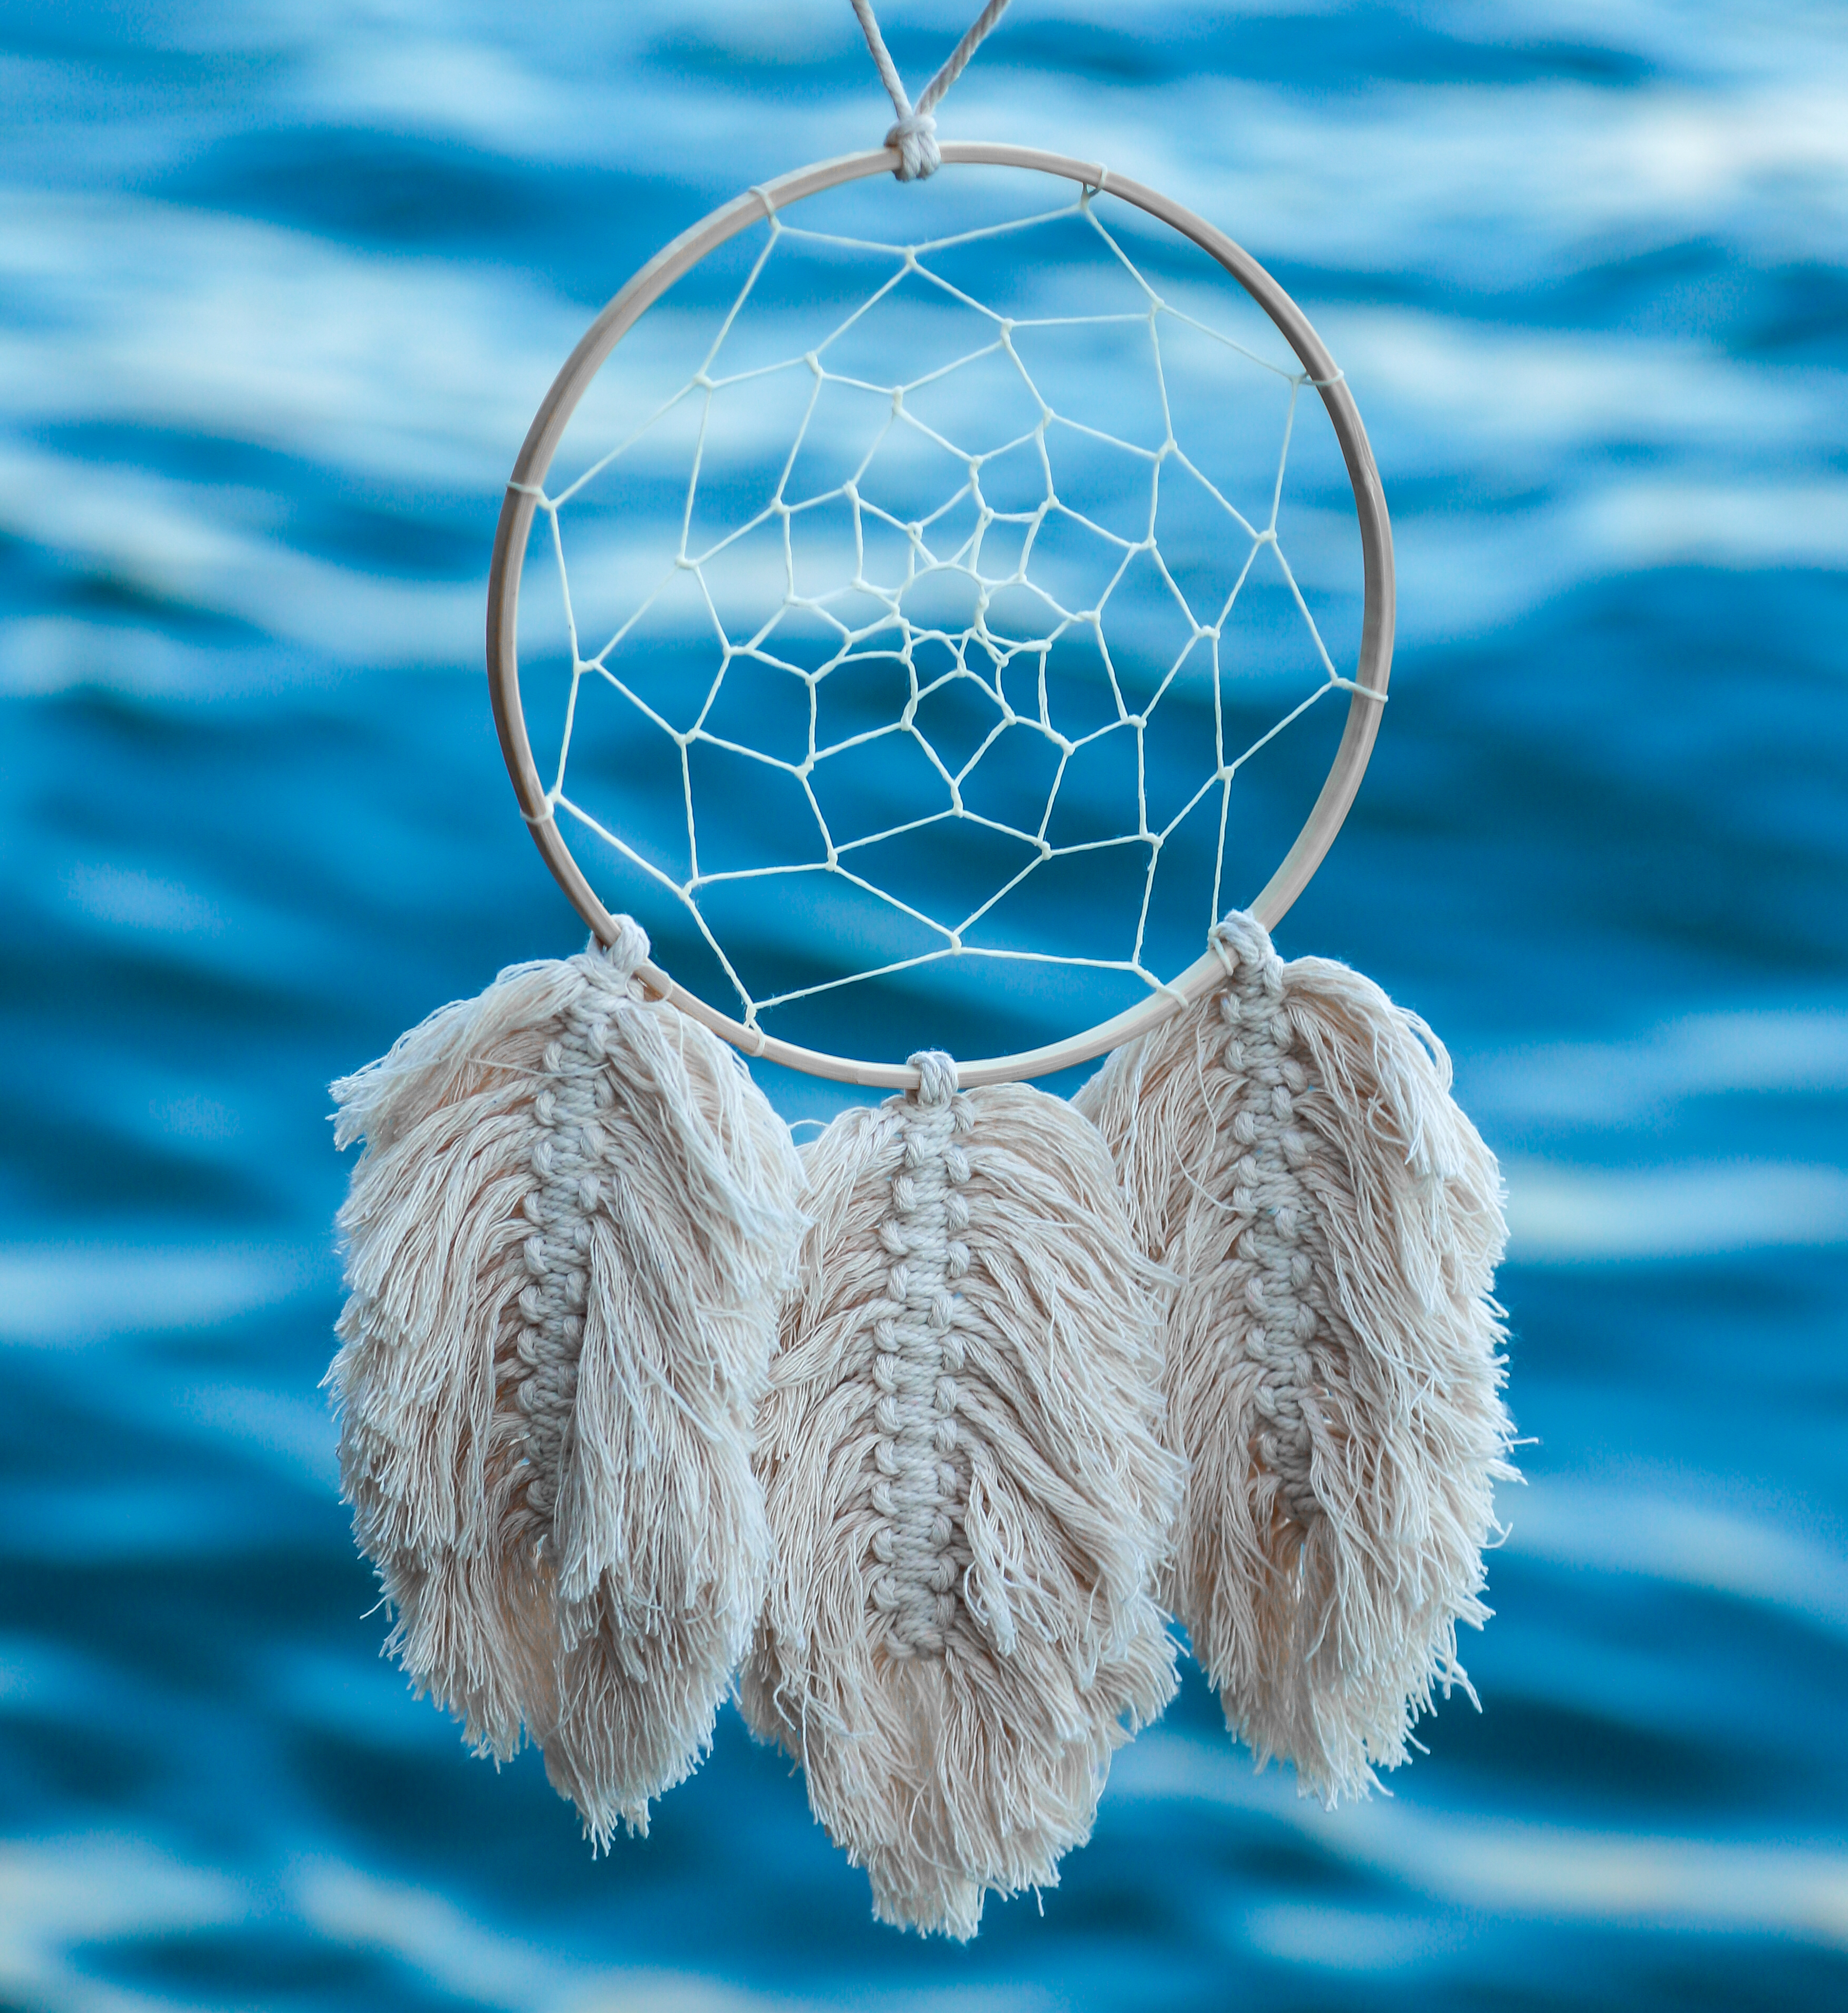 A dreamcatcher hanging against an ocean background | Source: Shutterstock